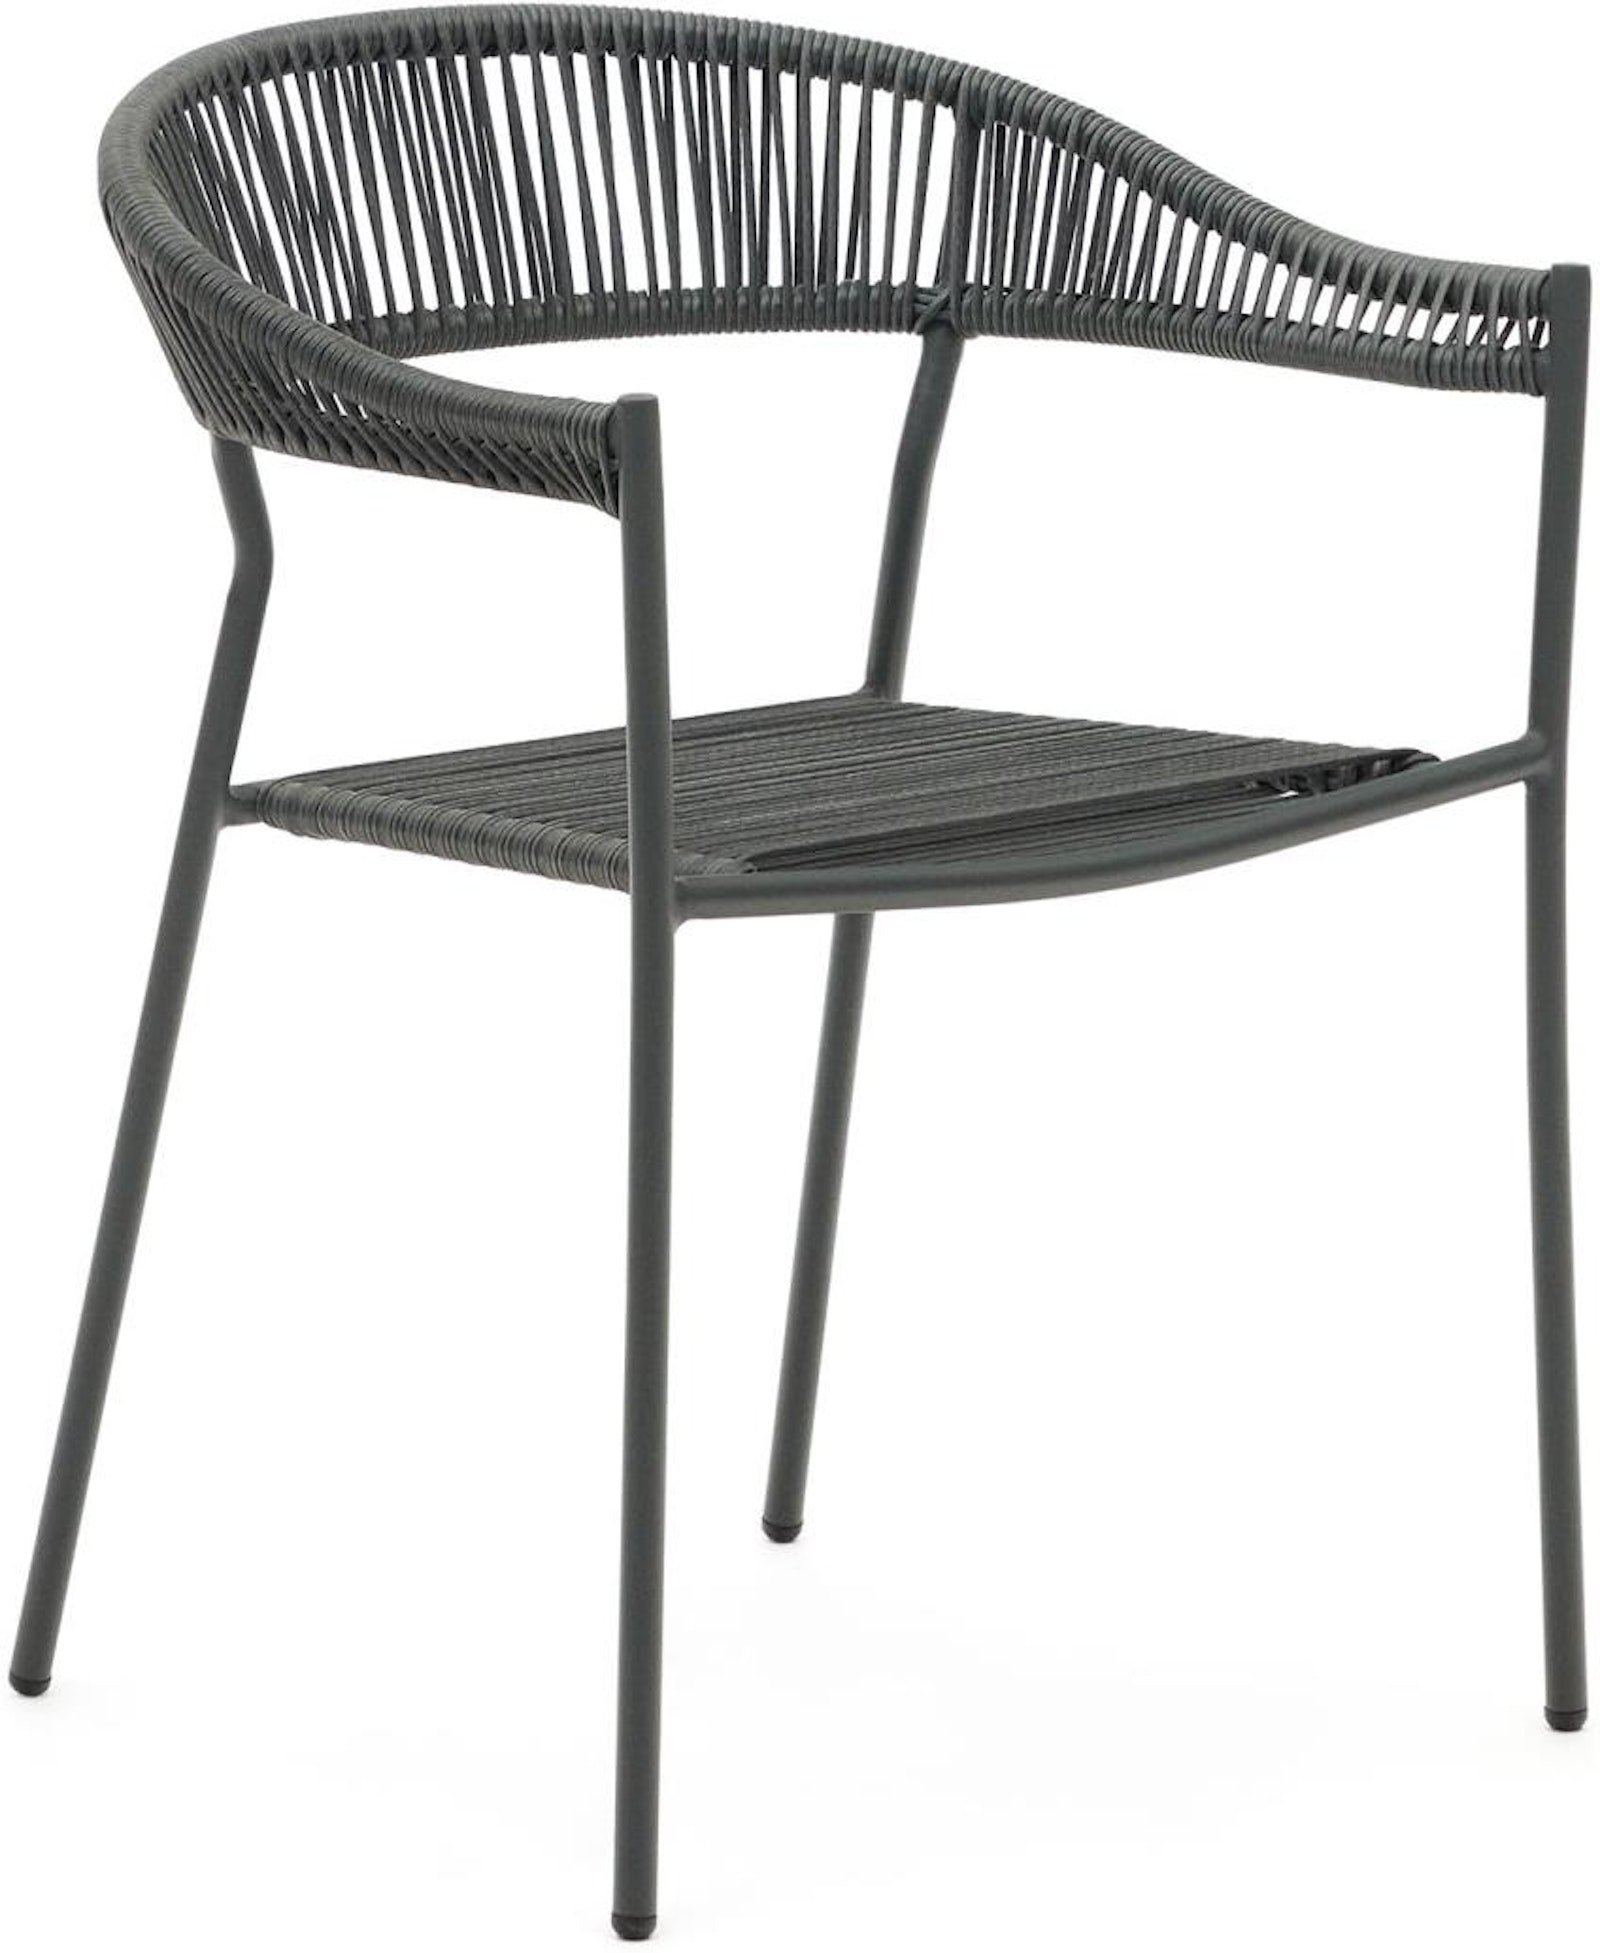 14: Futadera, Udendørs stol, moderne, nordisk by Laforma (H: 76 cm. x B: 57 cm. x L: 54 cm., Grå)